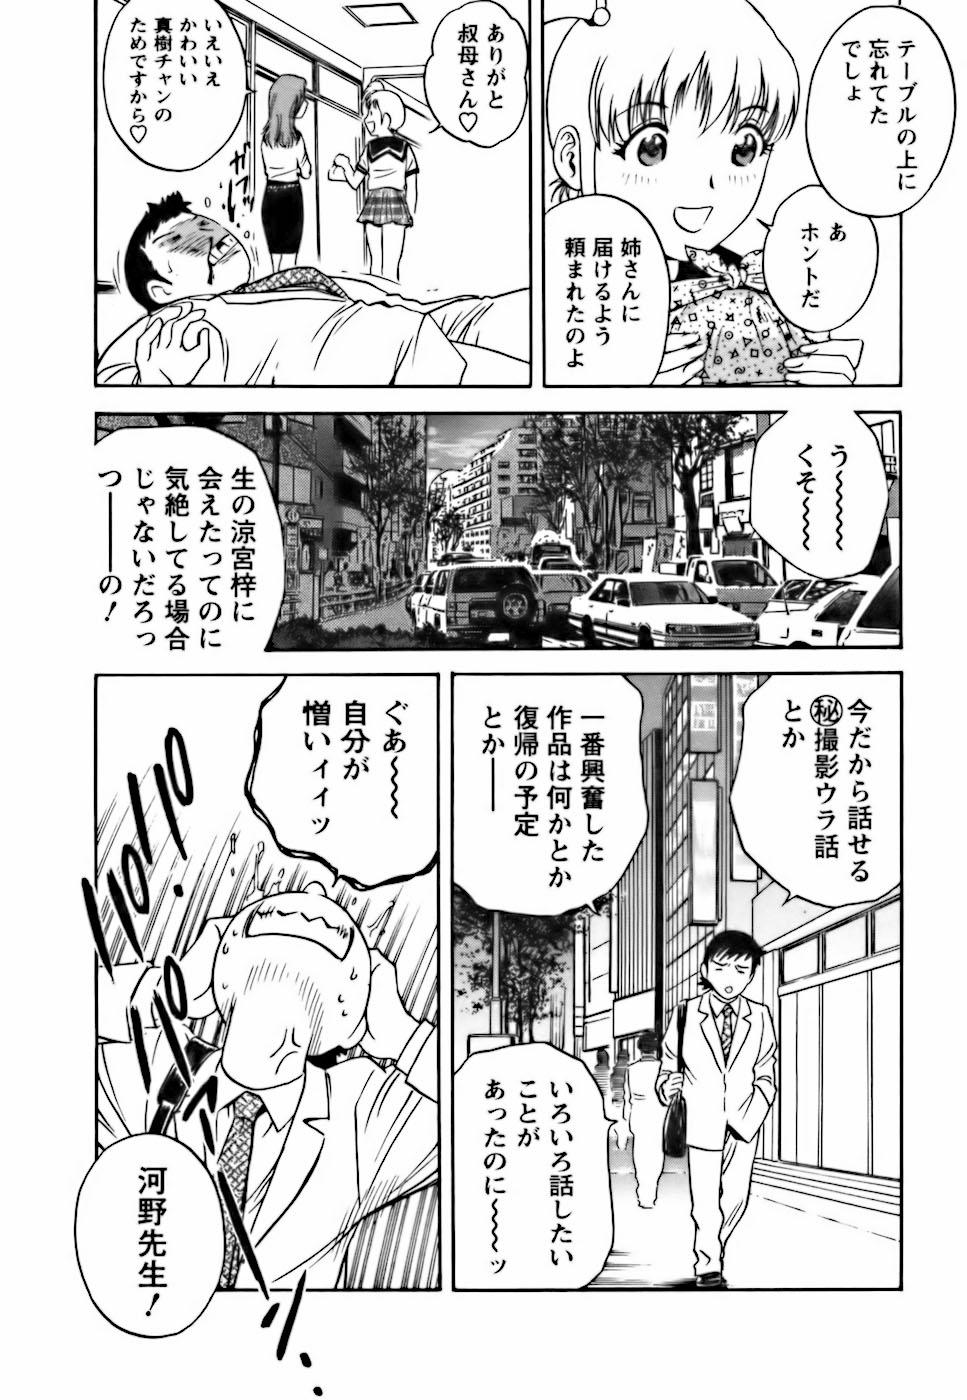 [Hidemaru] Mo-Retsu! Boin Sensei (Boing Boing Teacher) Vol.3 36